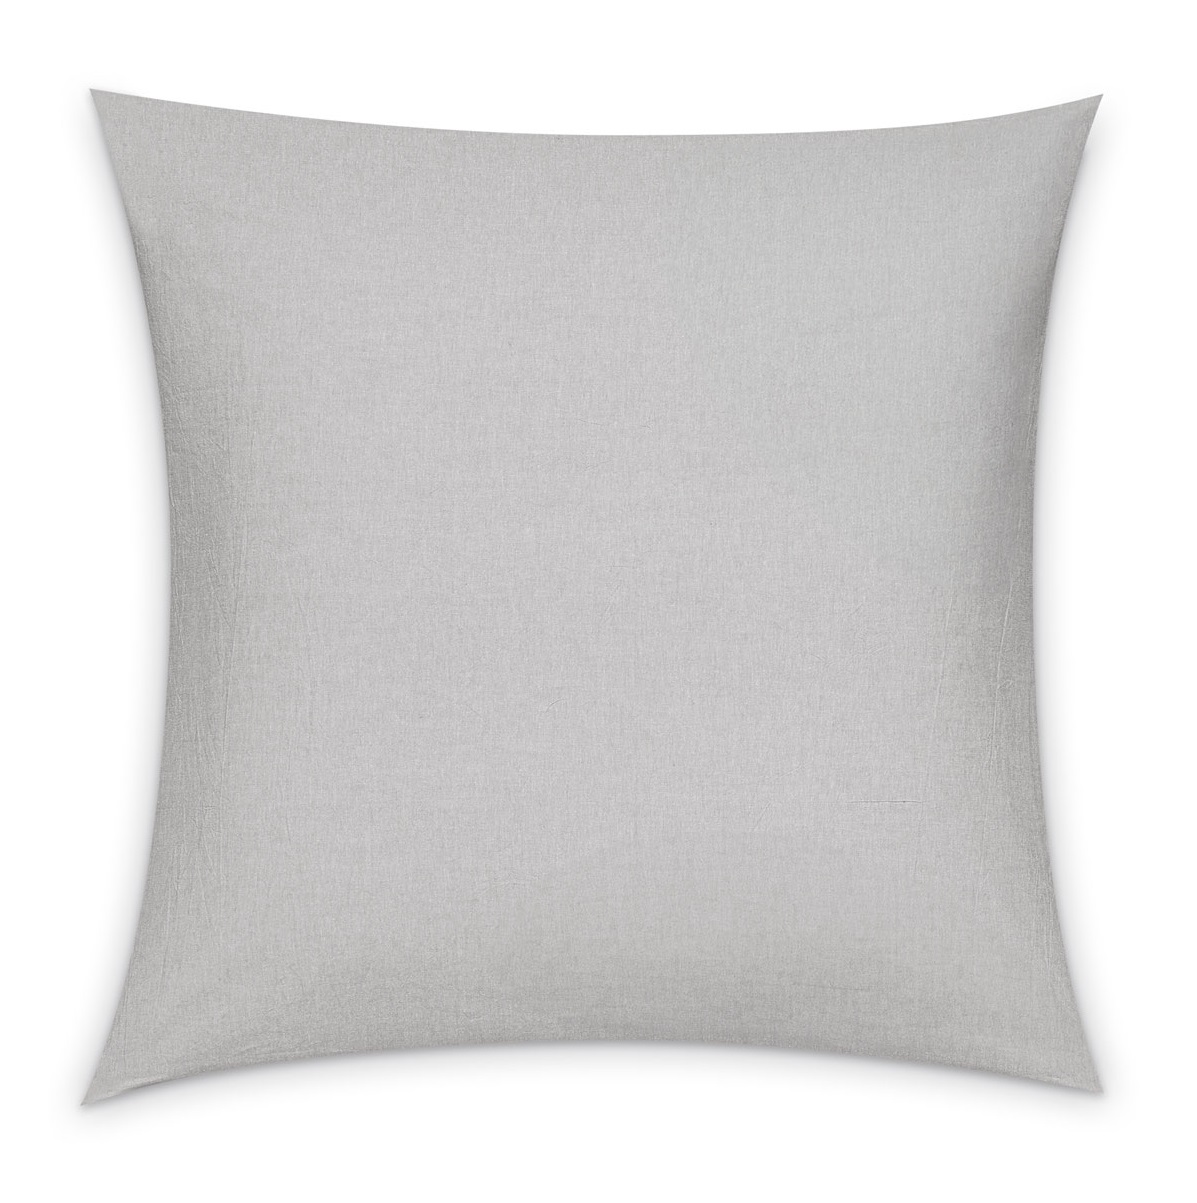 Комплект постельного белья Prime Prive Смоген Двуспальный кинг сайз светло-серый, размер Кинг сайз - фото 10